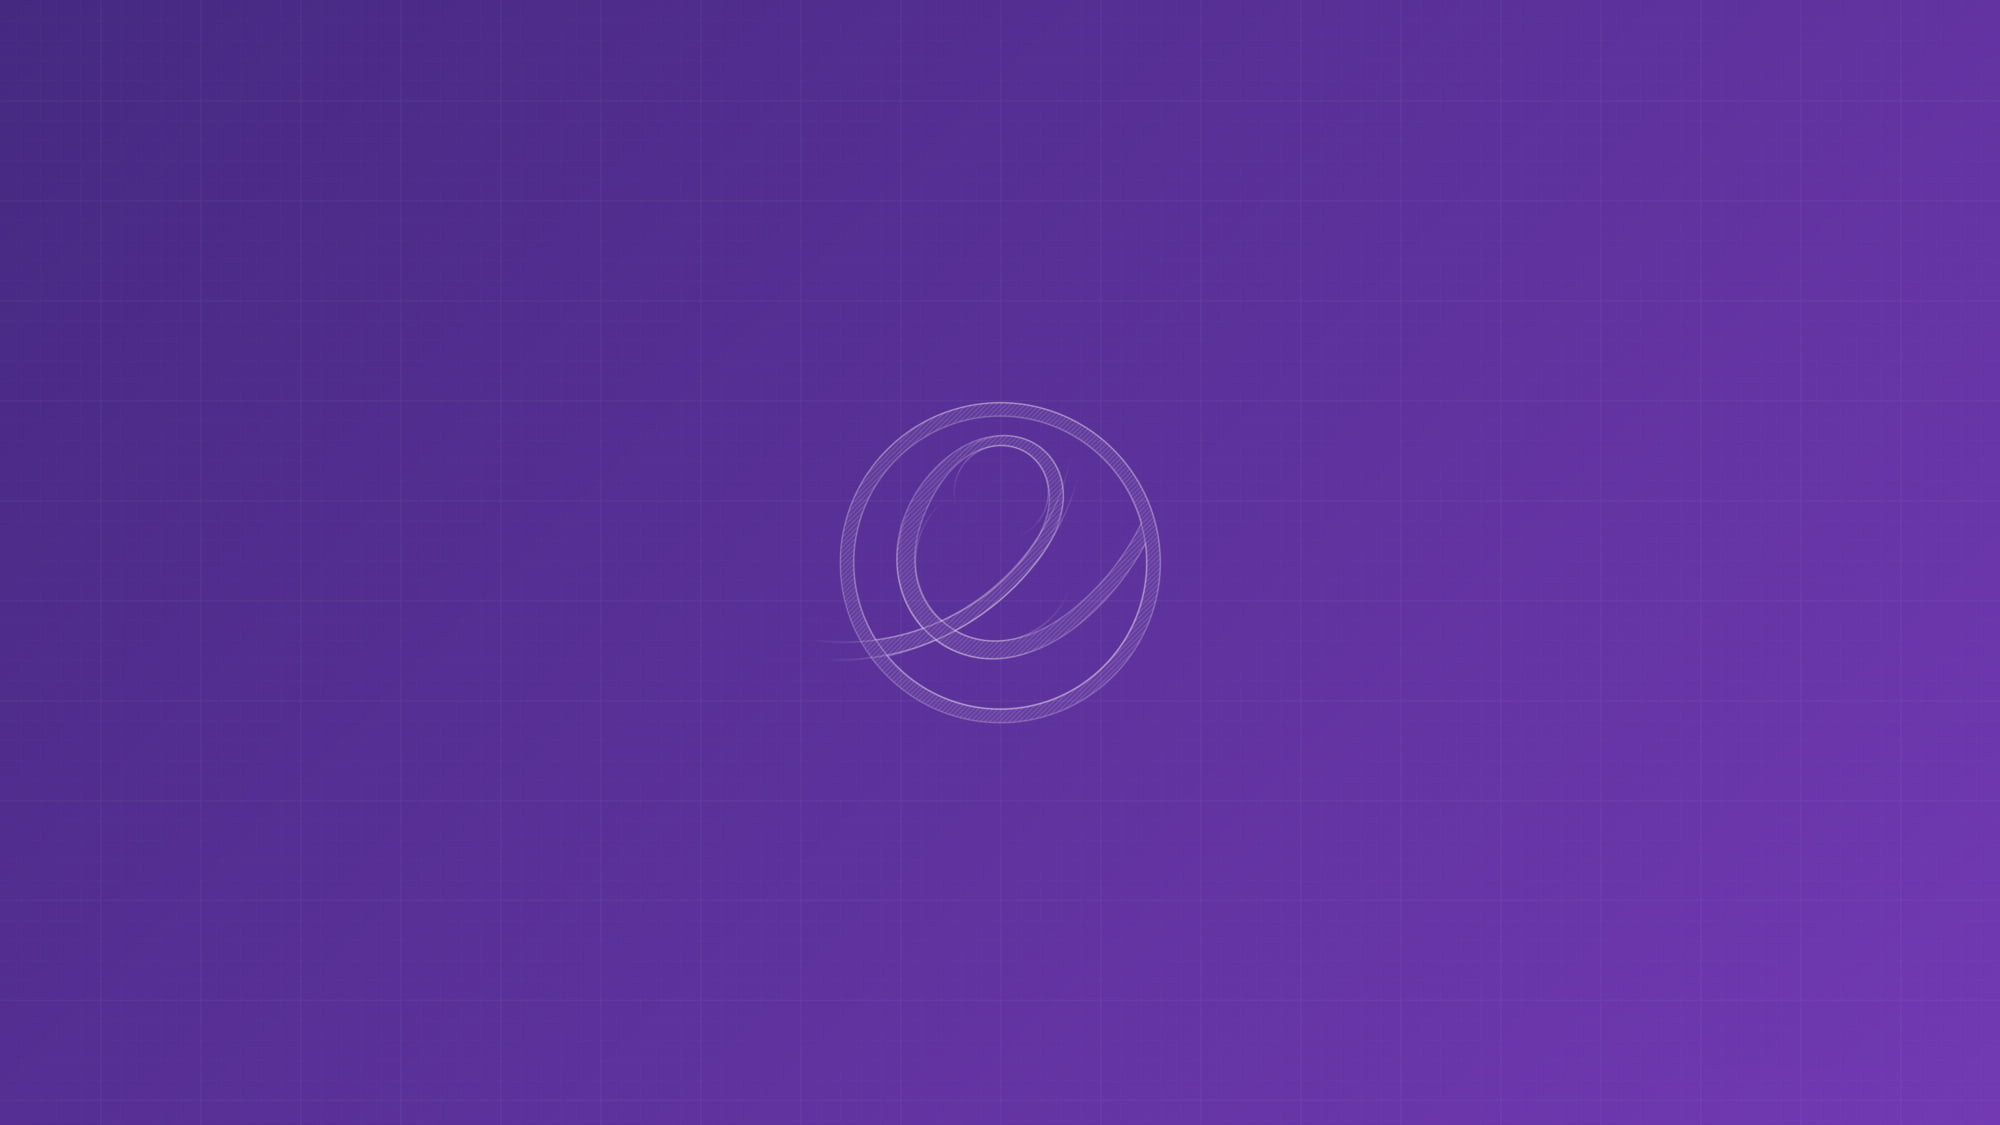 elementary OS, purple background, minimalism, logo, no people